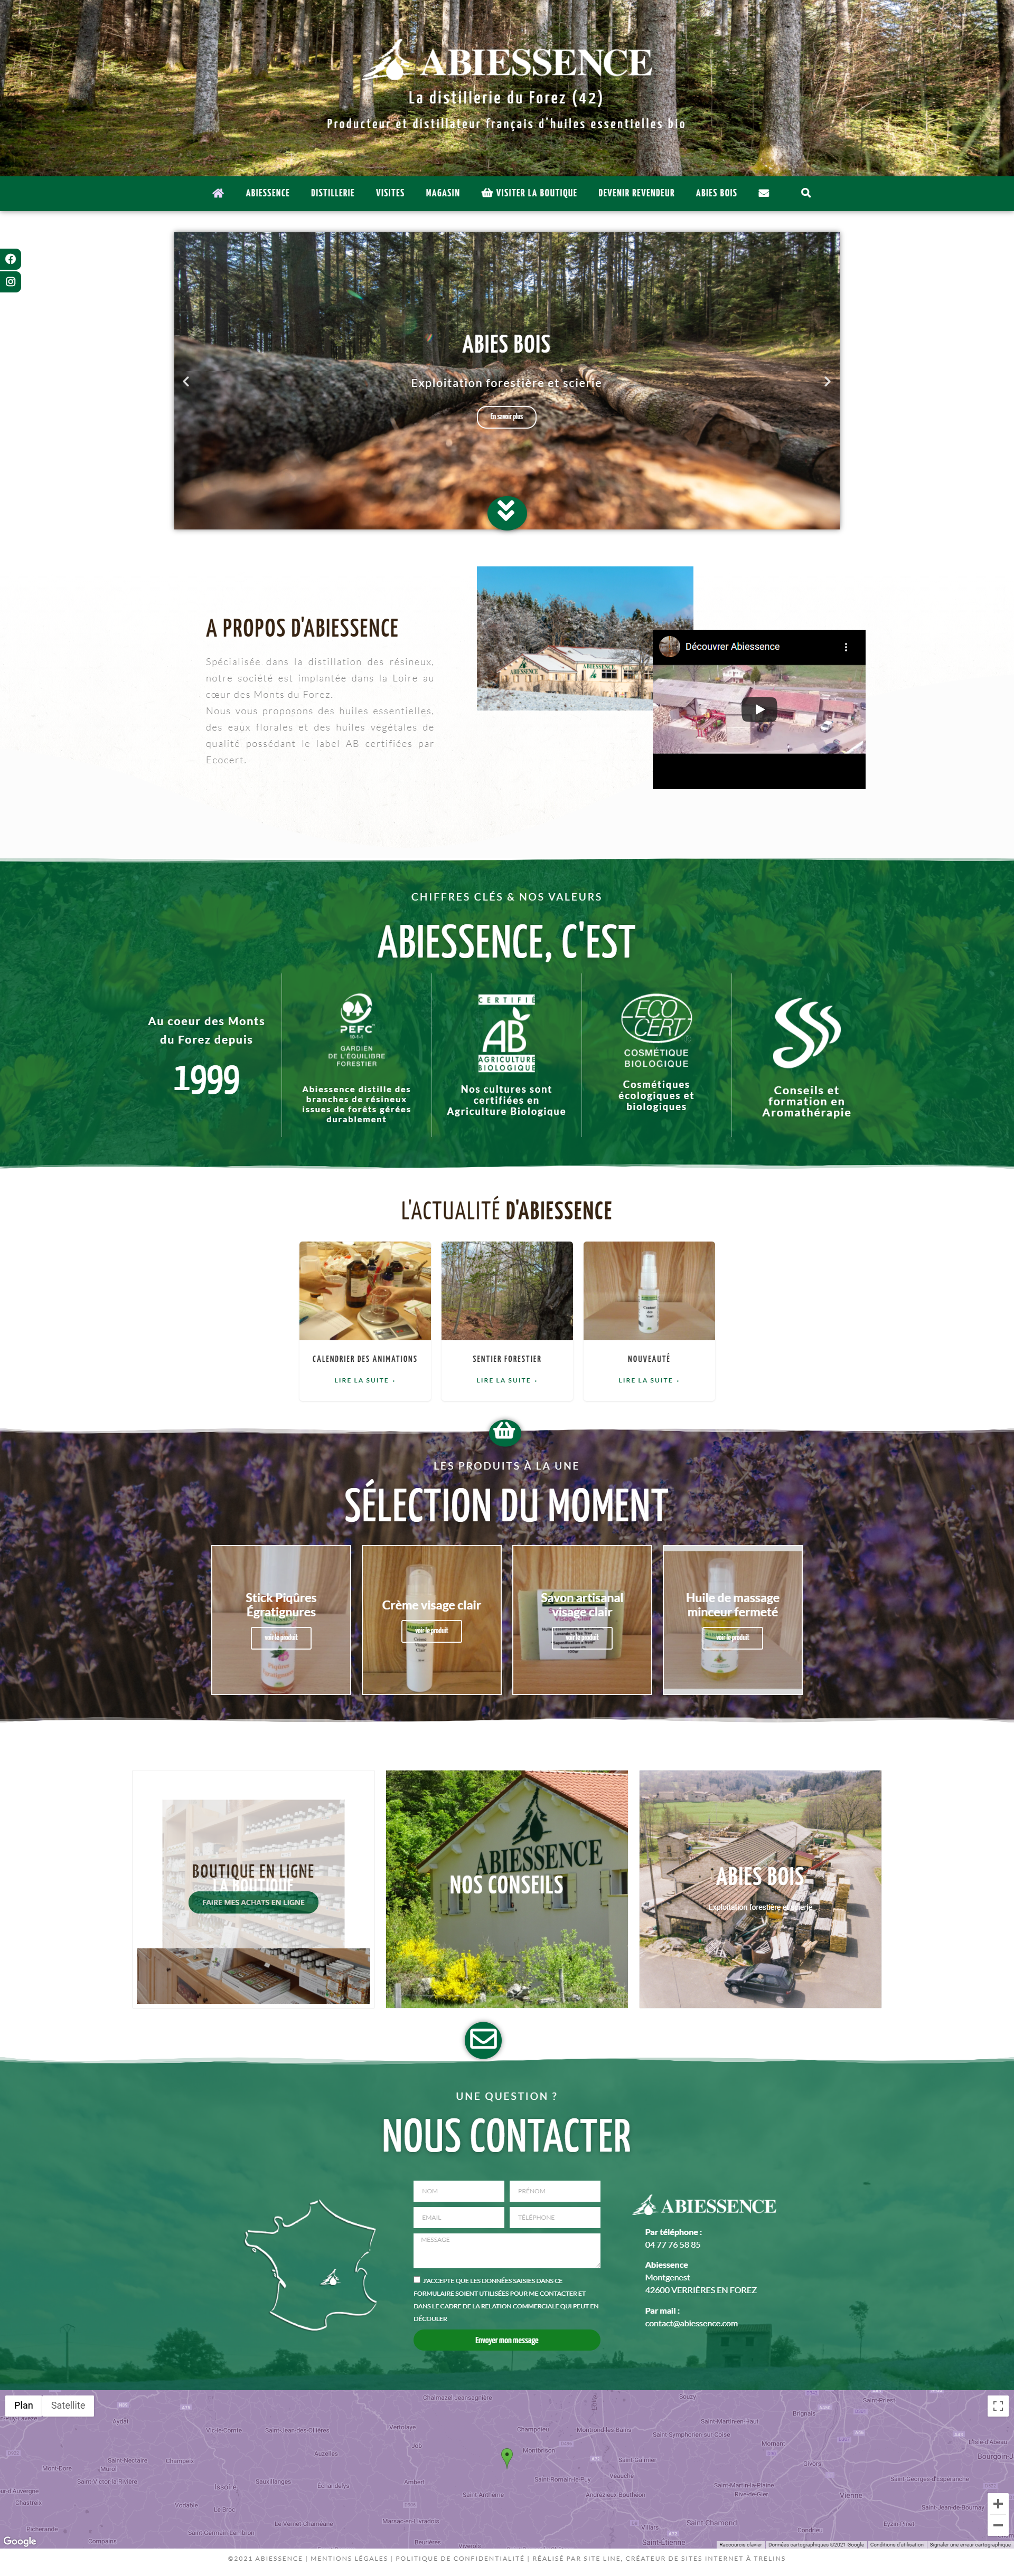 creation du site web vitrine d'Abiessence, distillerie d'huiles essentielles bio